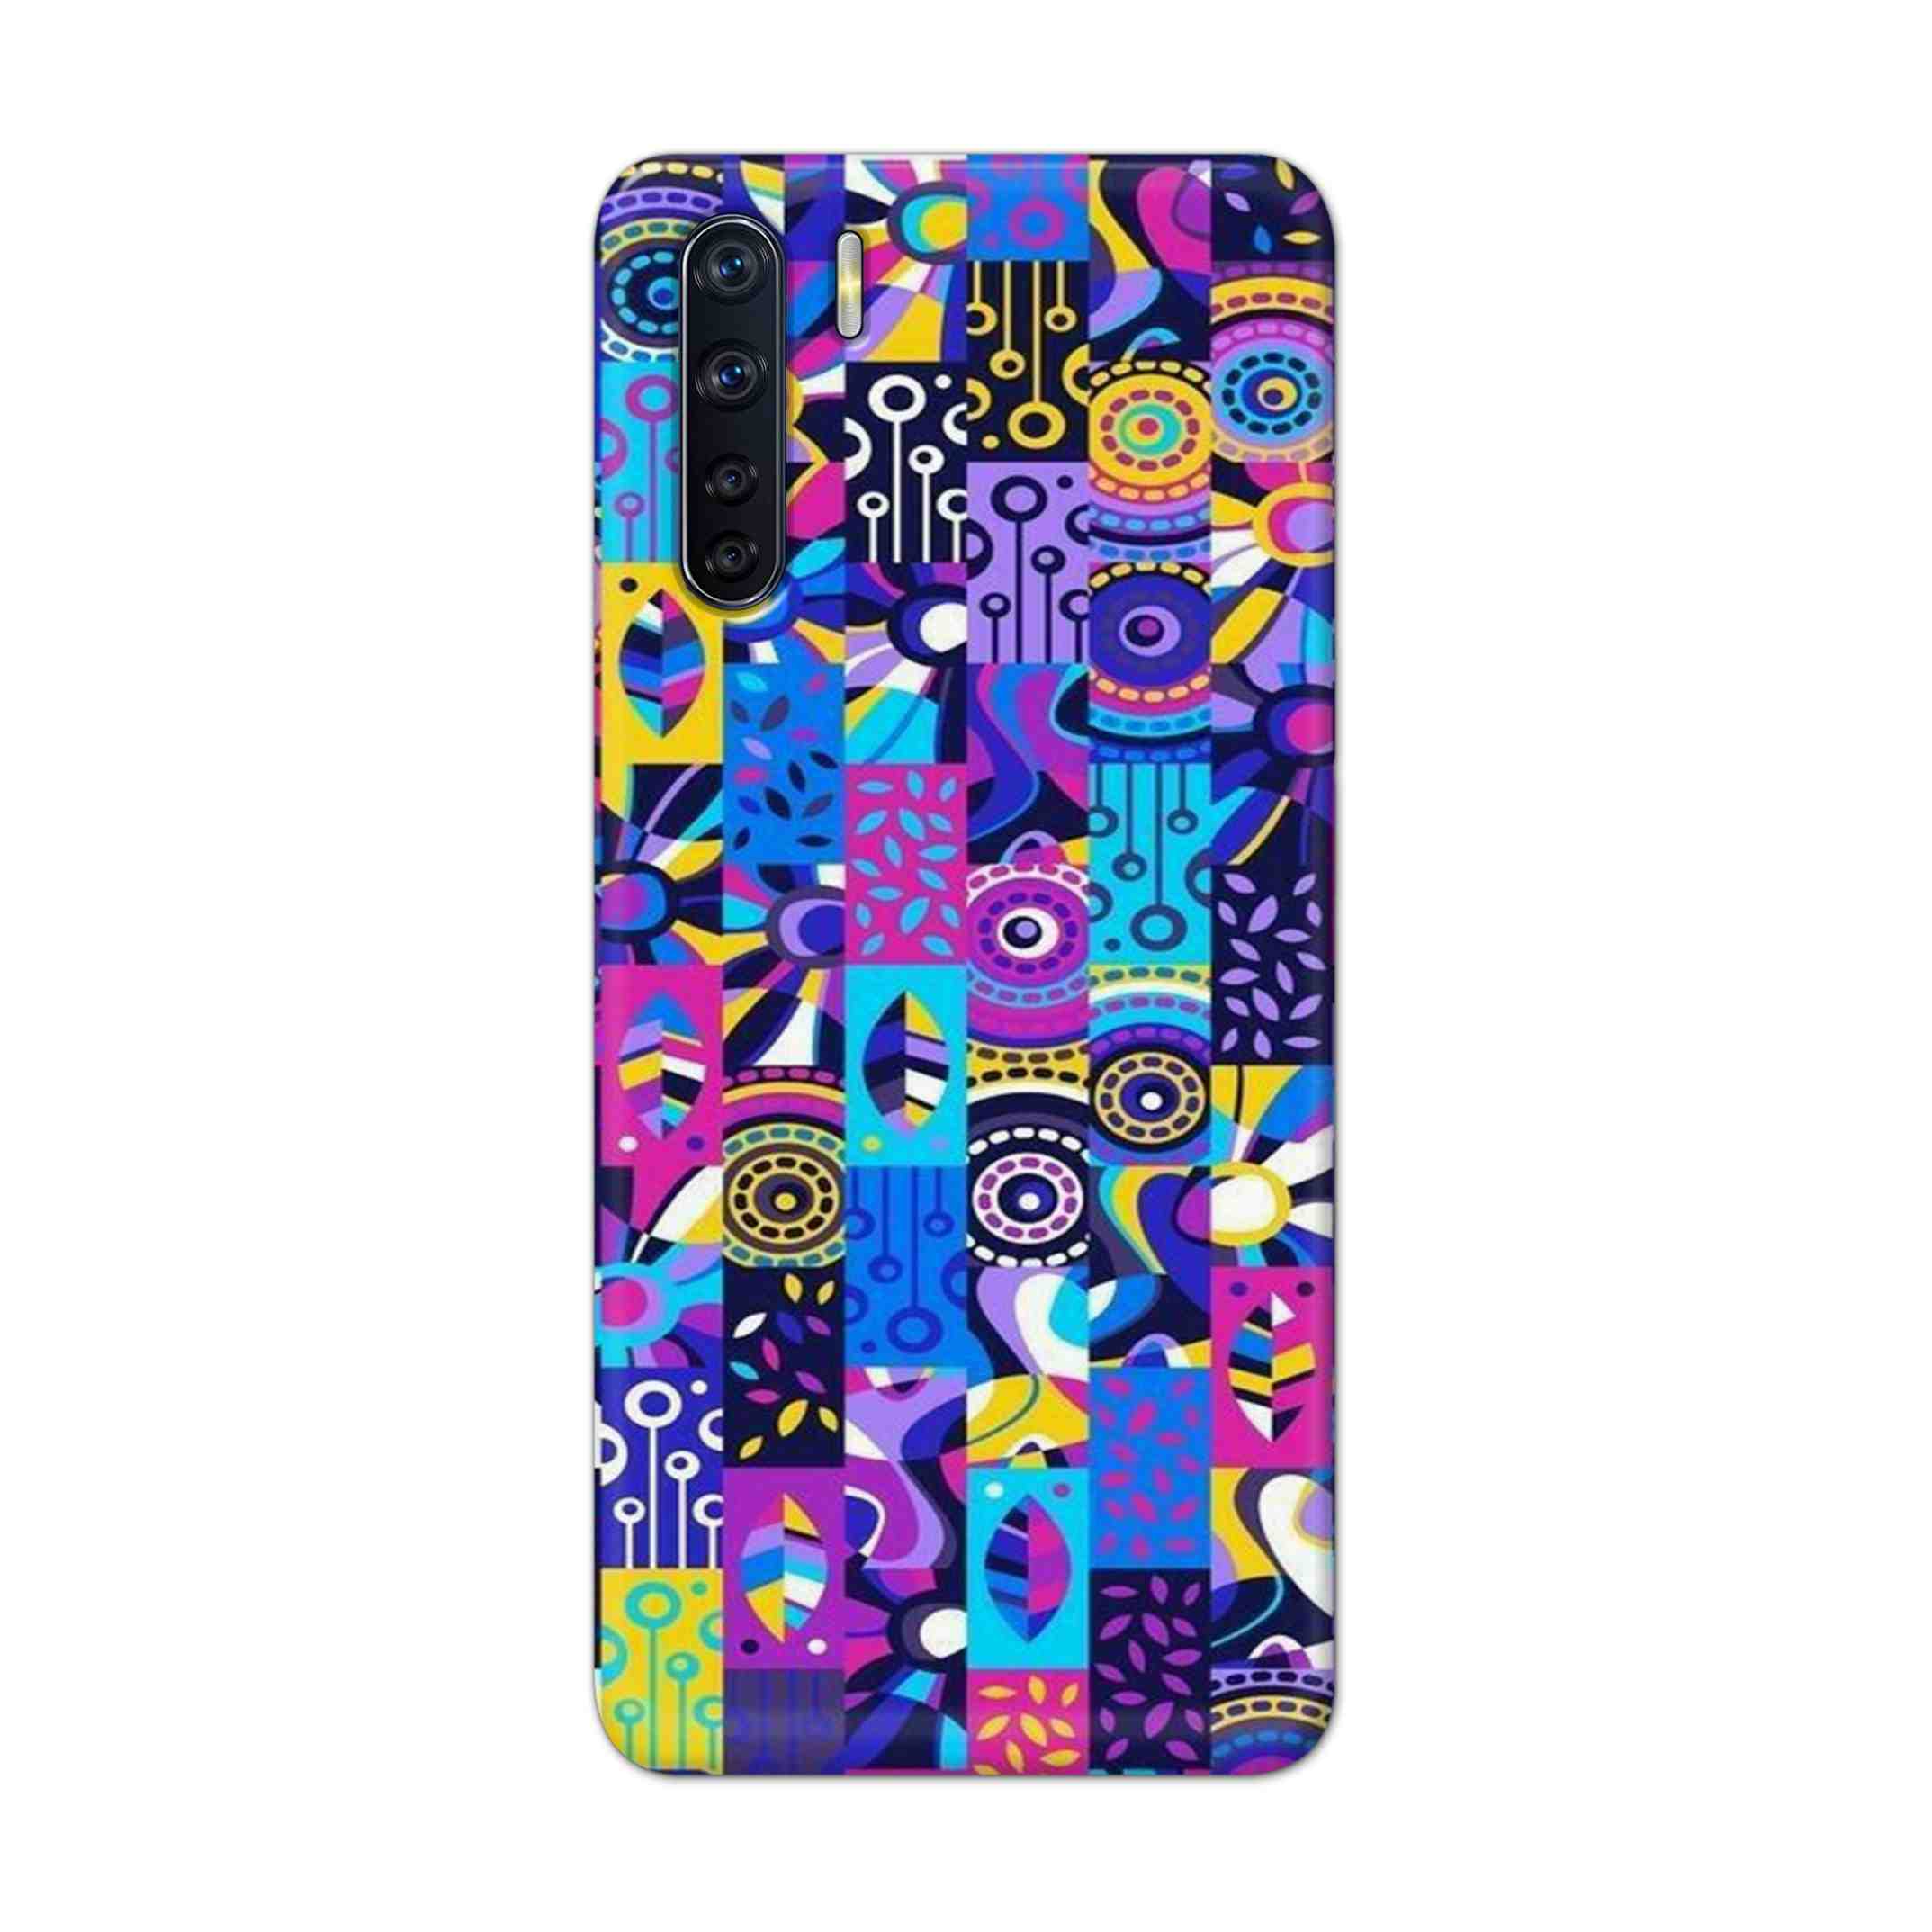 Buy Rainbow Art Hard Back Mobile Phone Case Cover For OPPO F15 Online